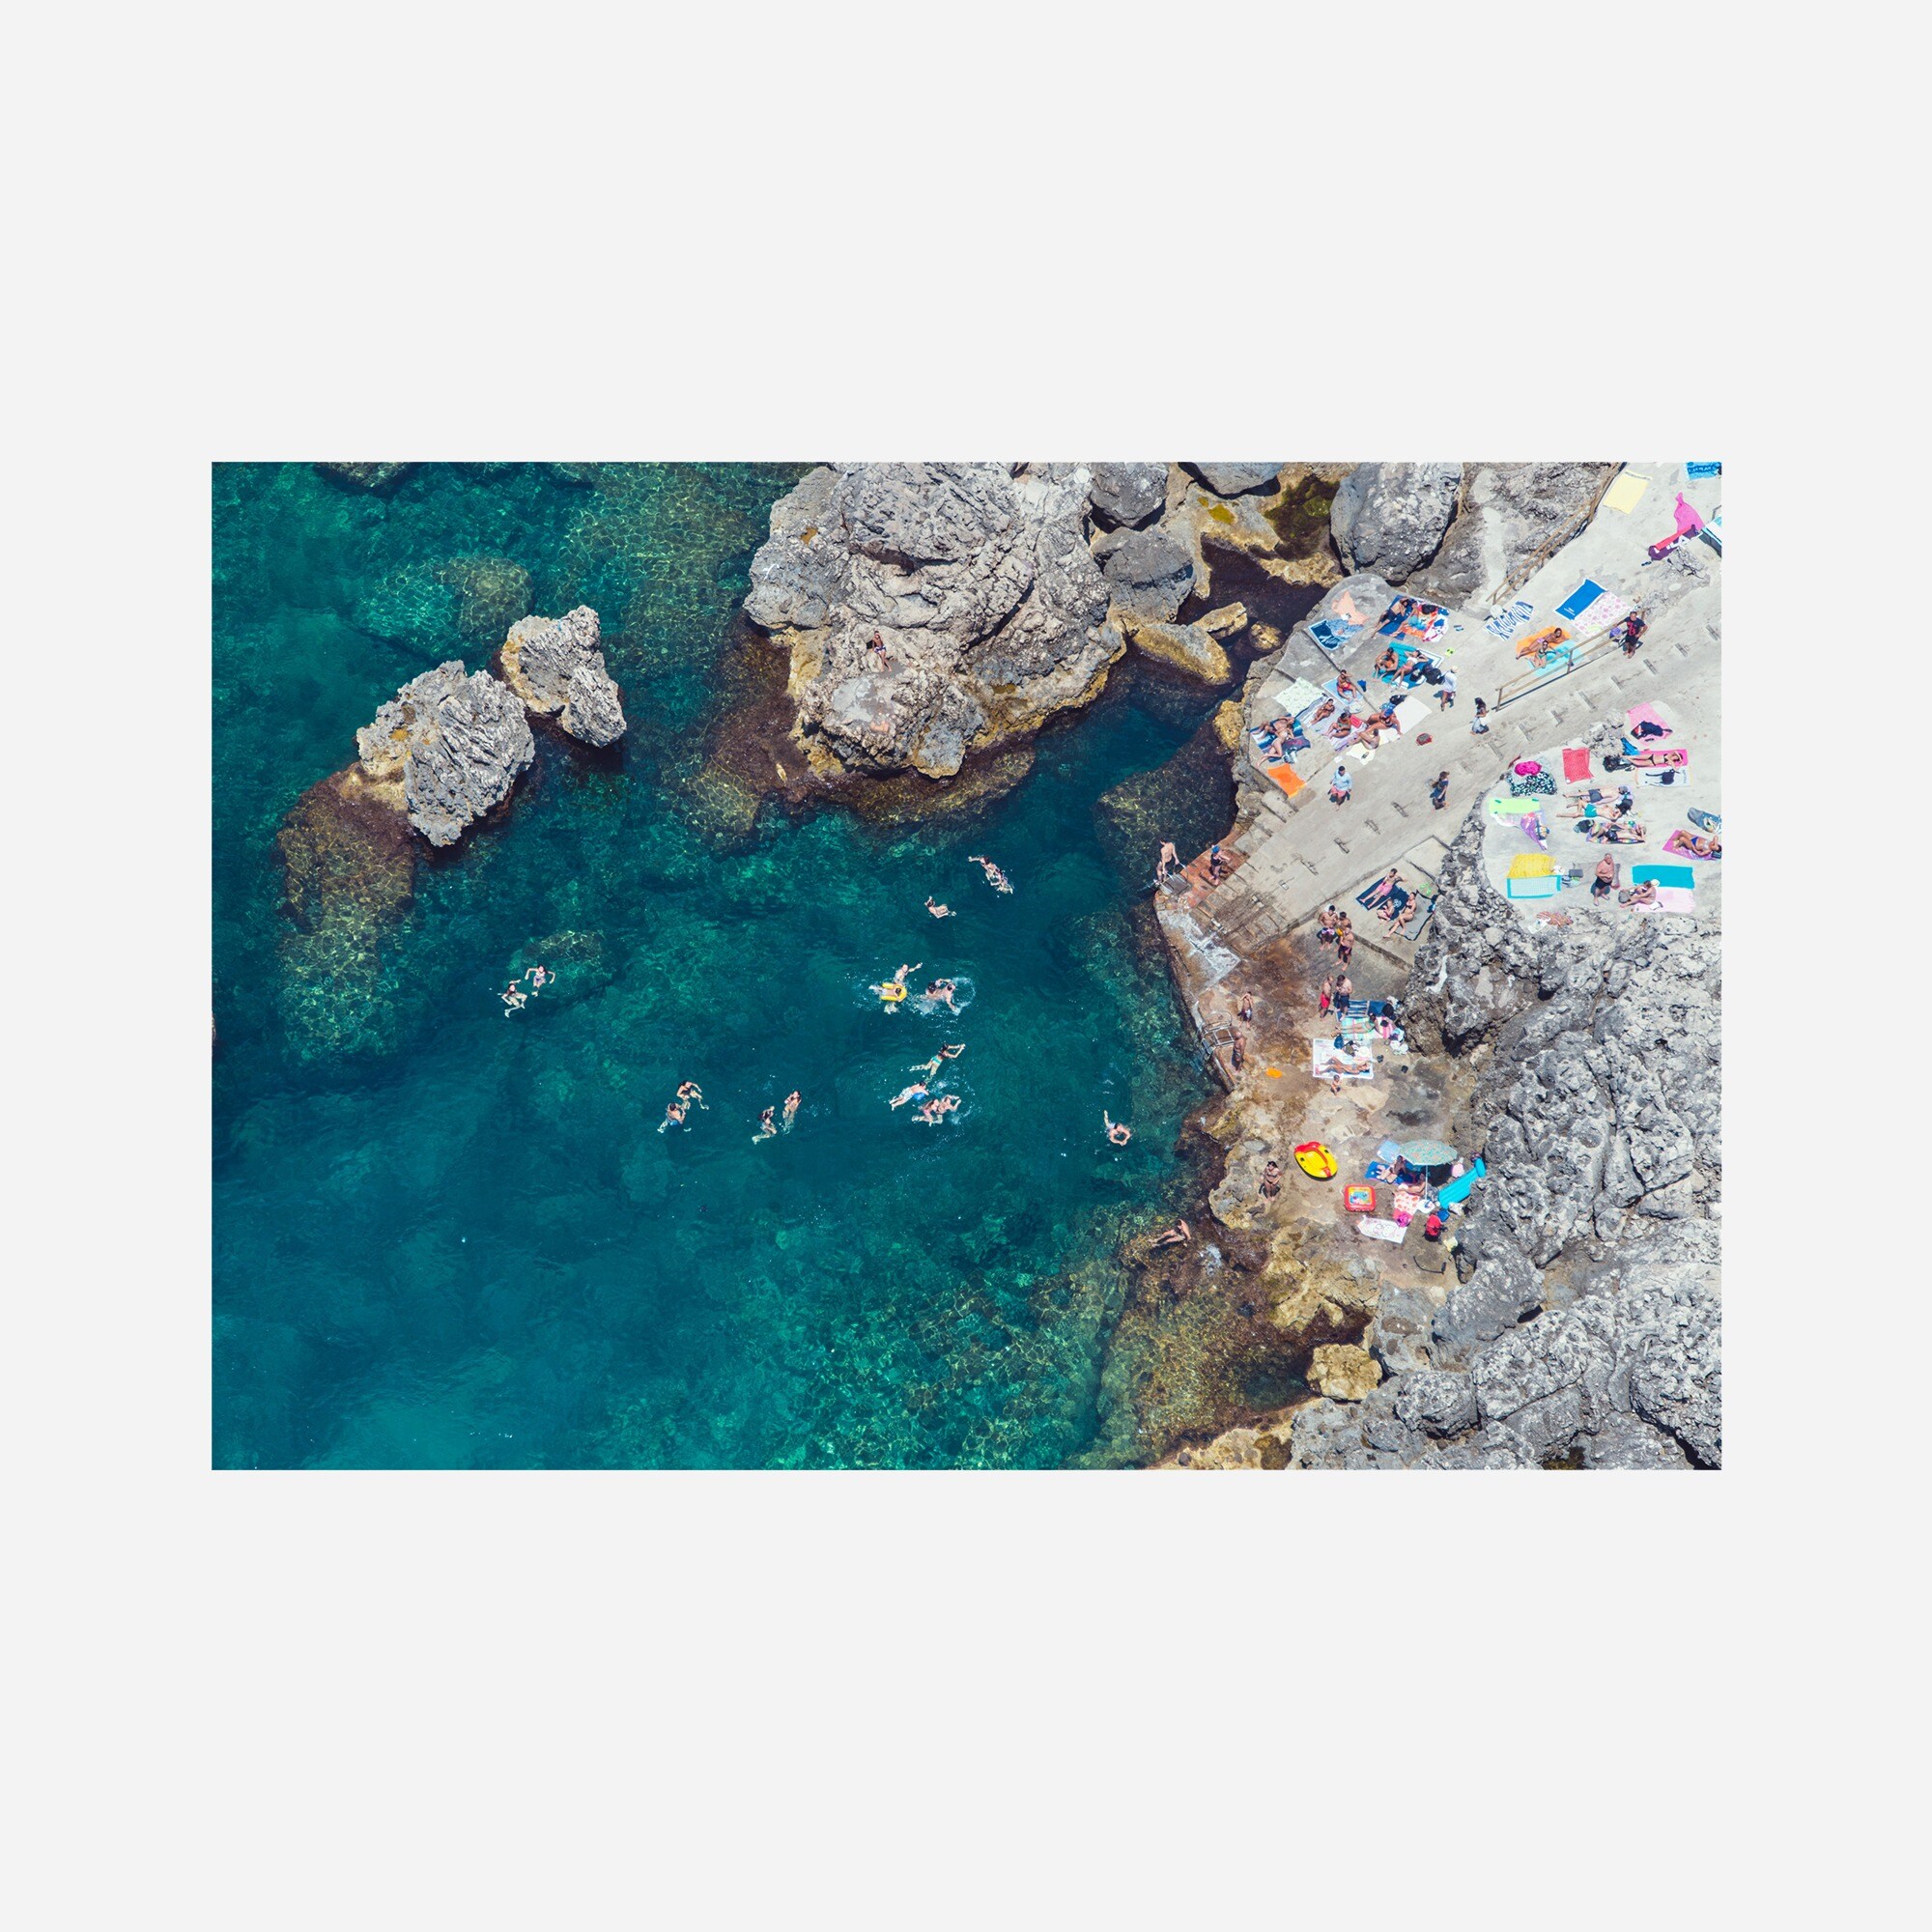  Gray Malin Lido del Faro swimmers, Capri